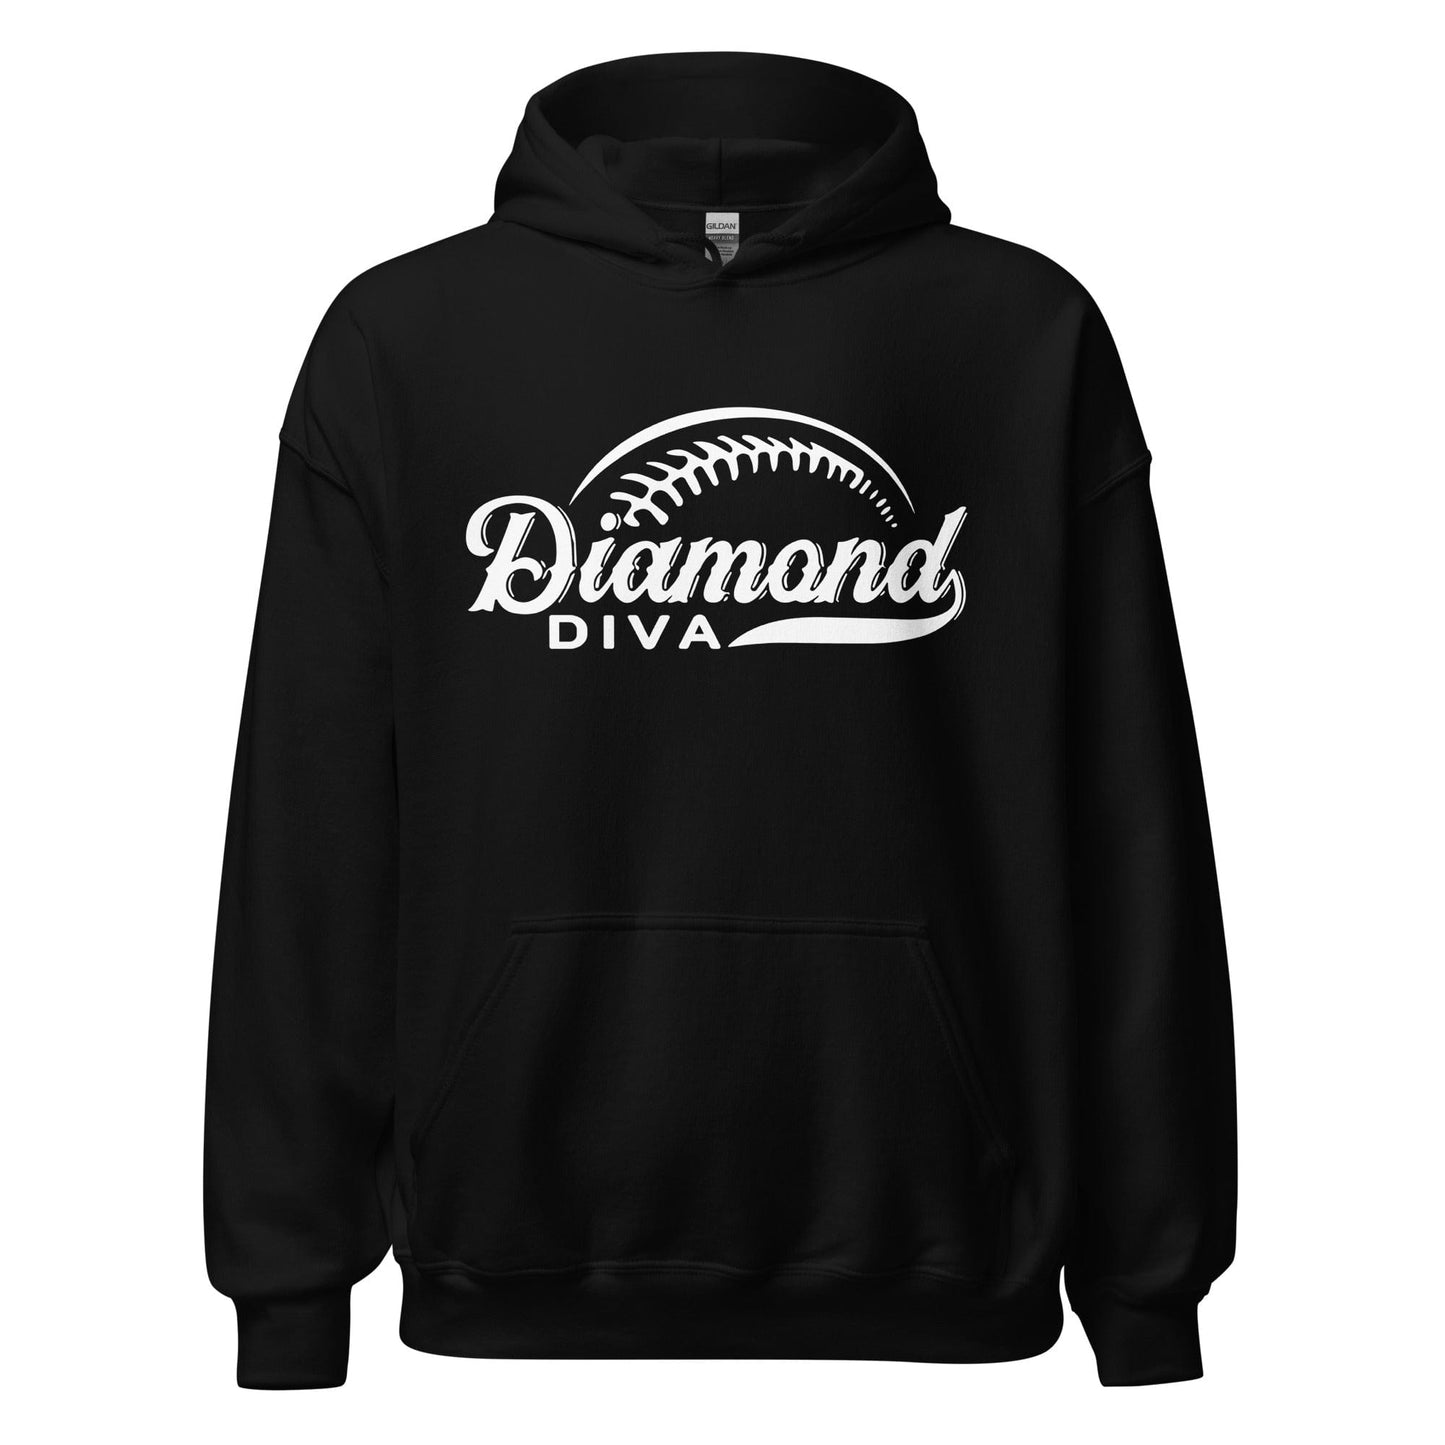 Diamond Diva - Adult Hoodie